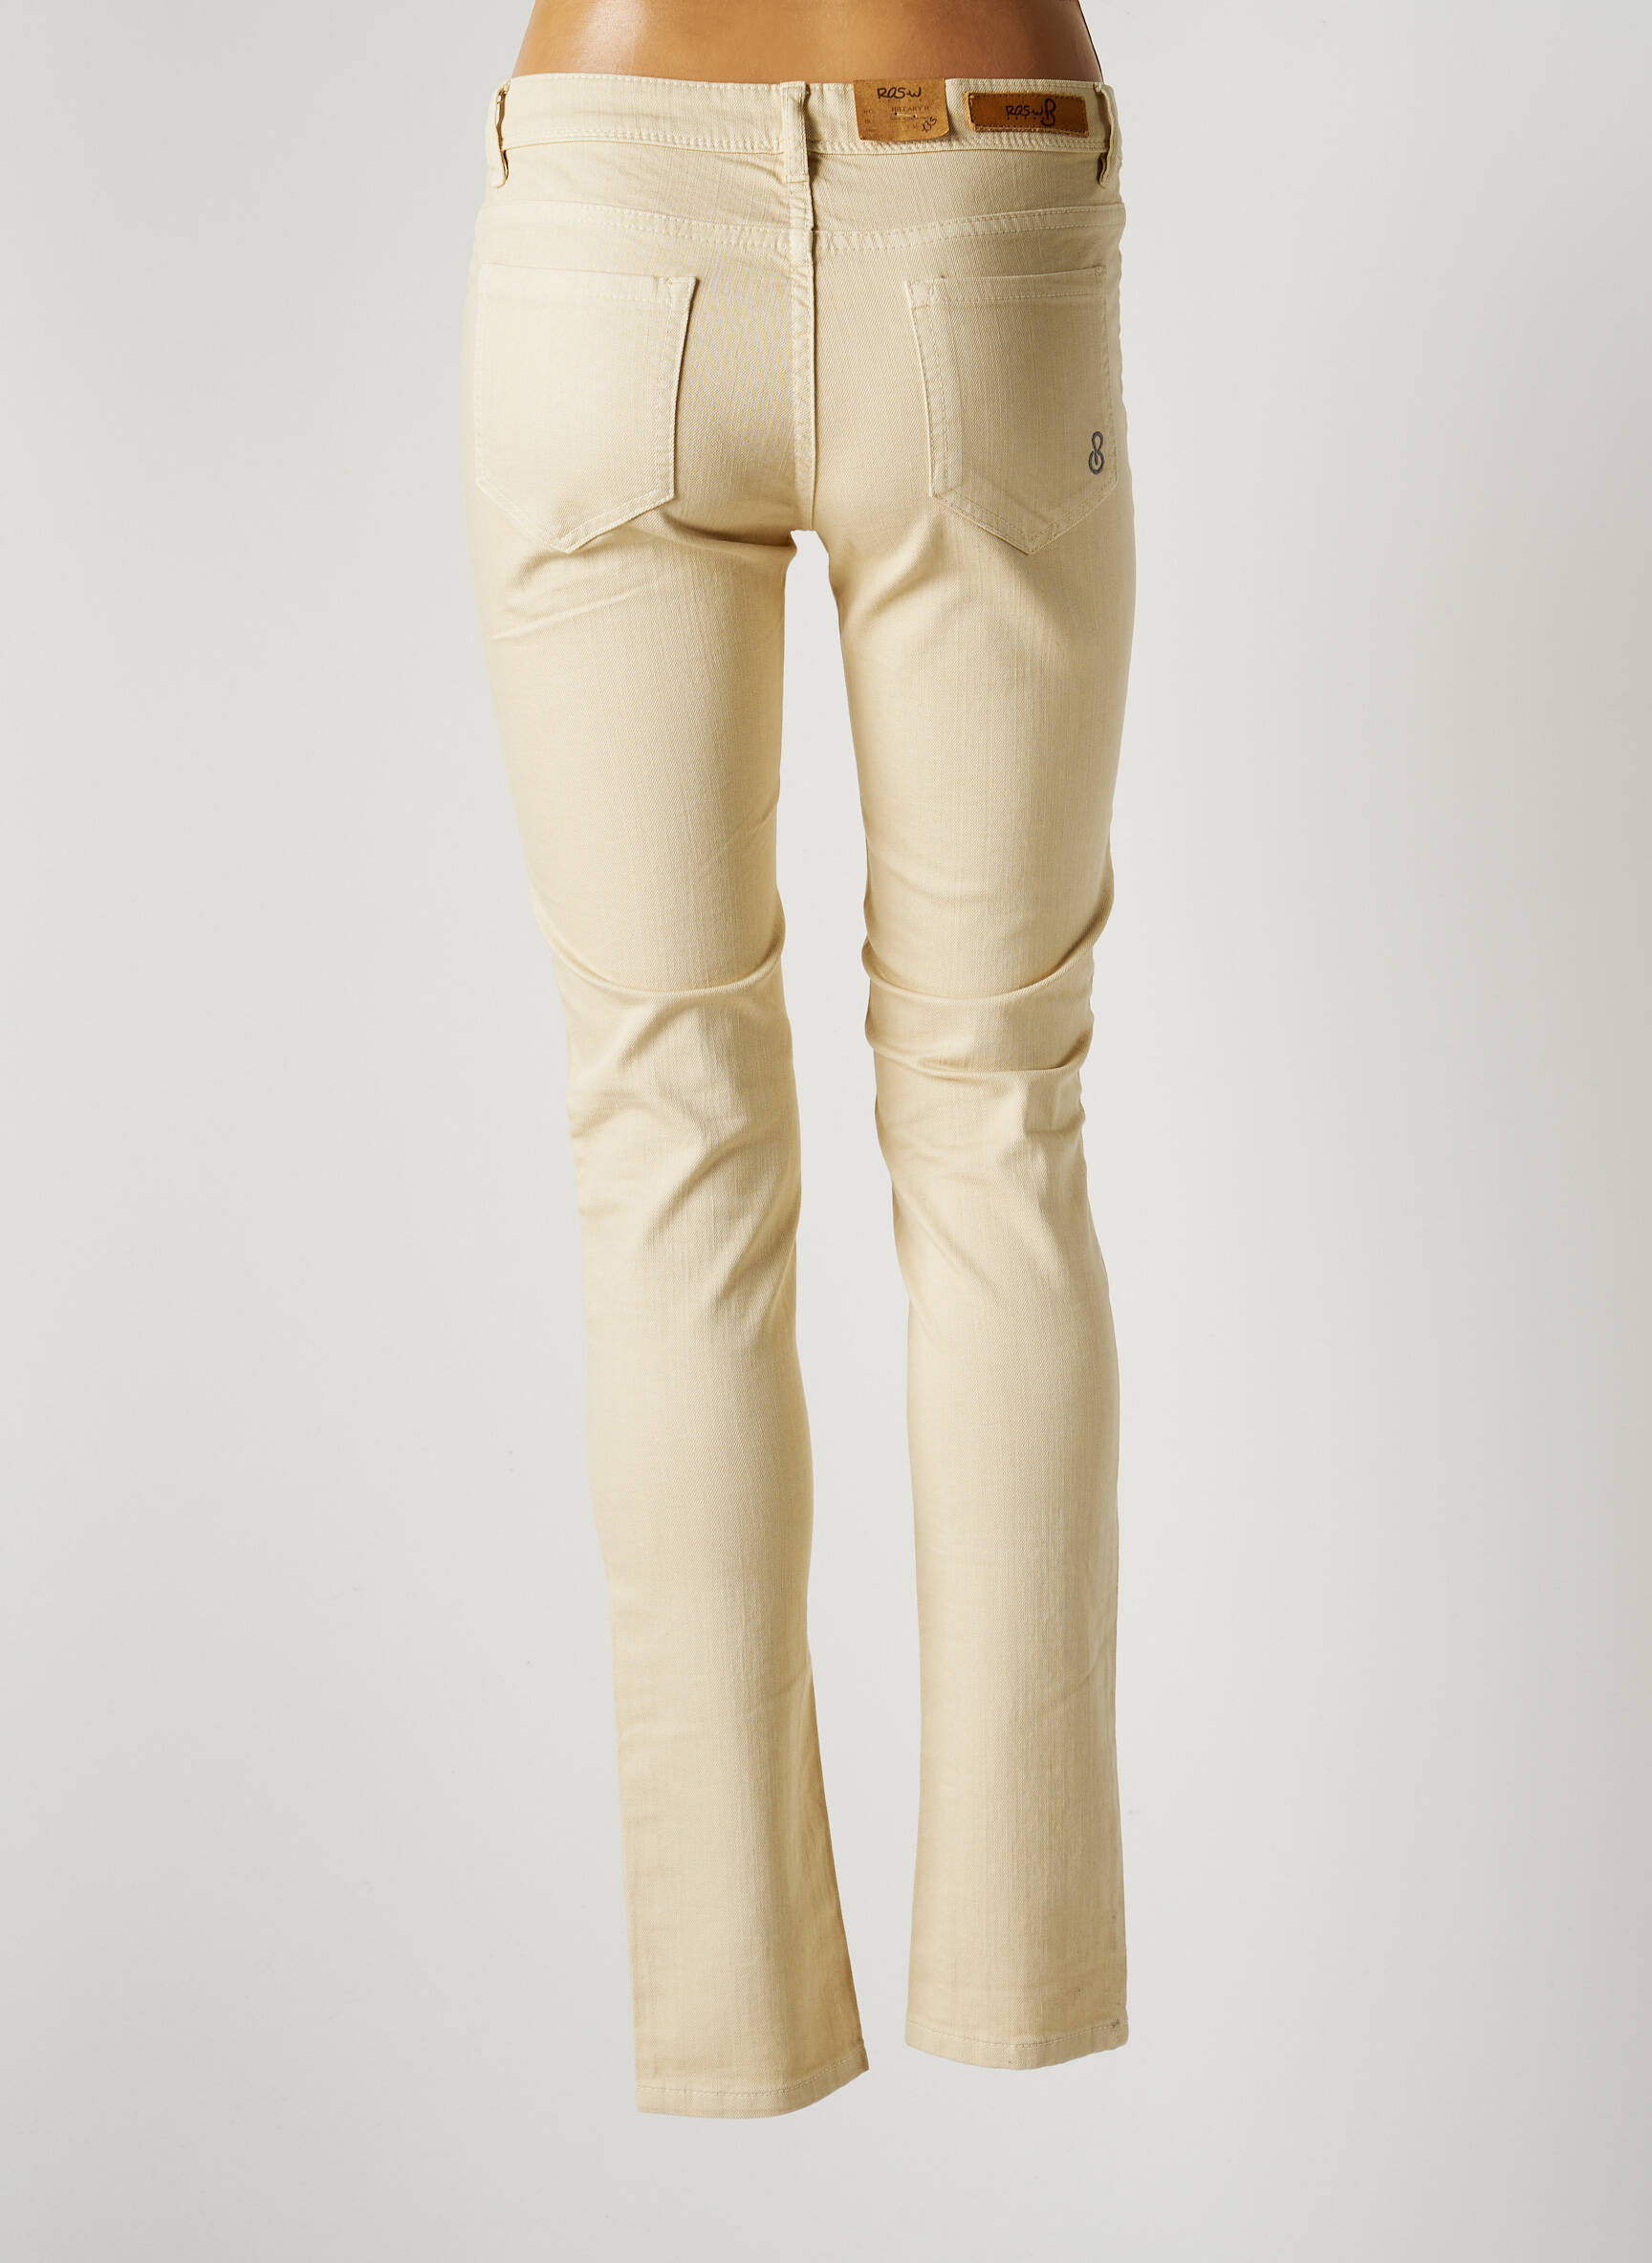 Ros W Jeans Jeans Coupe Slim Femme De Beige En Destockage 1980003-beige0 - Modz